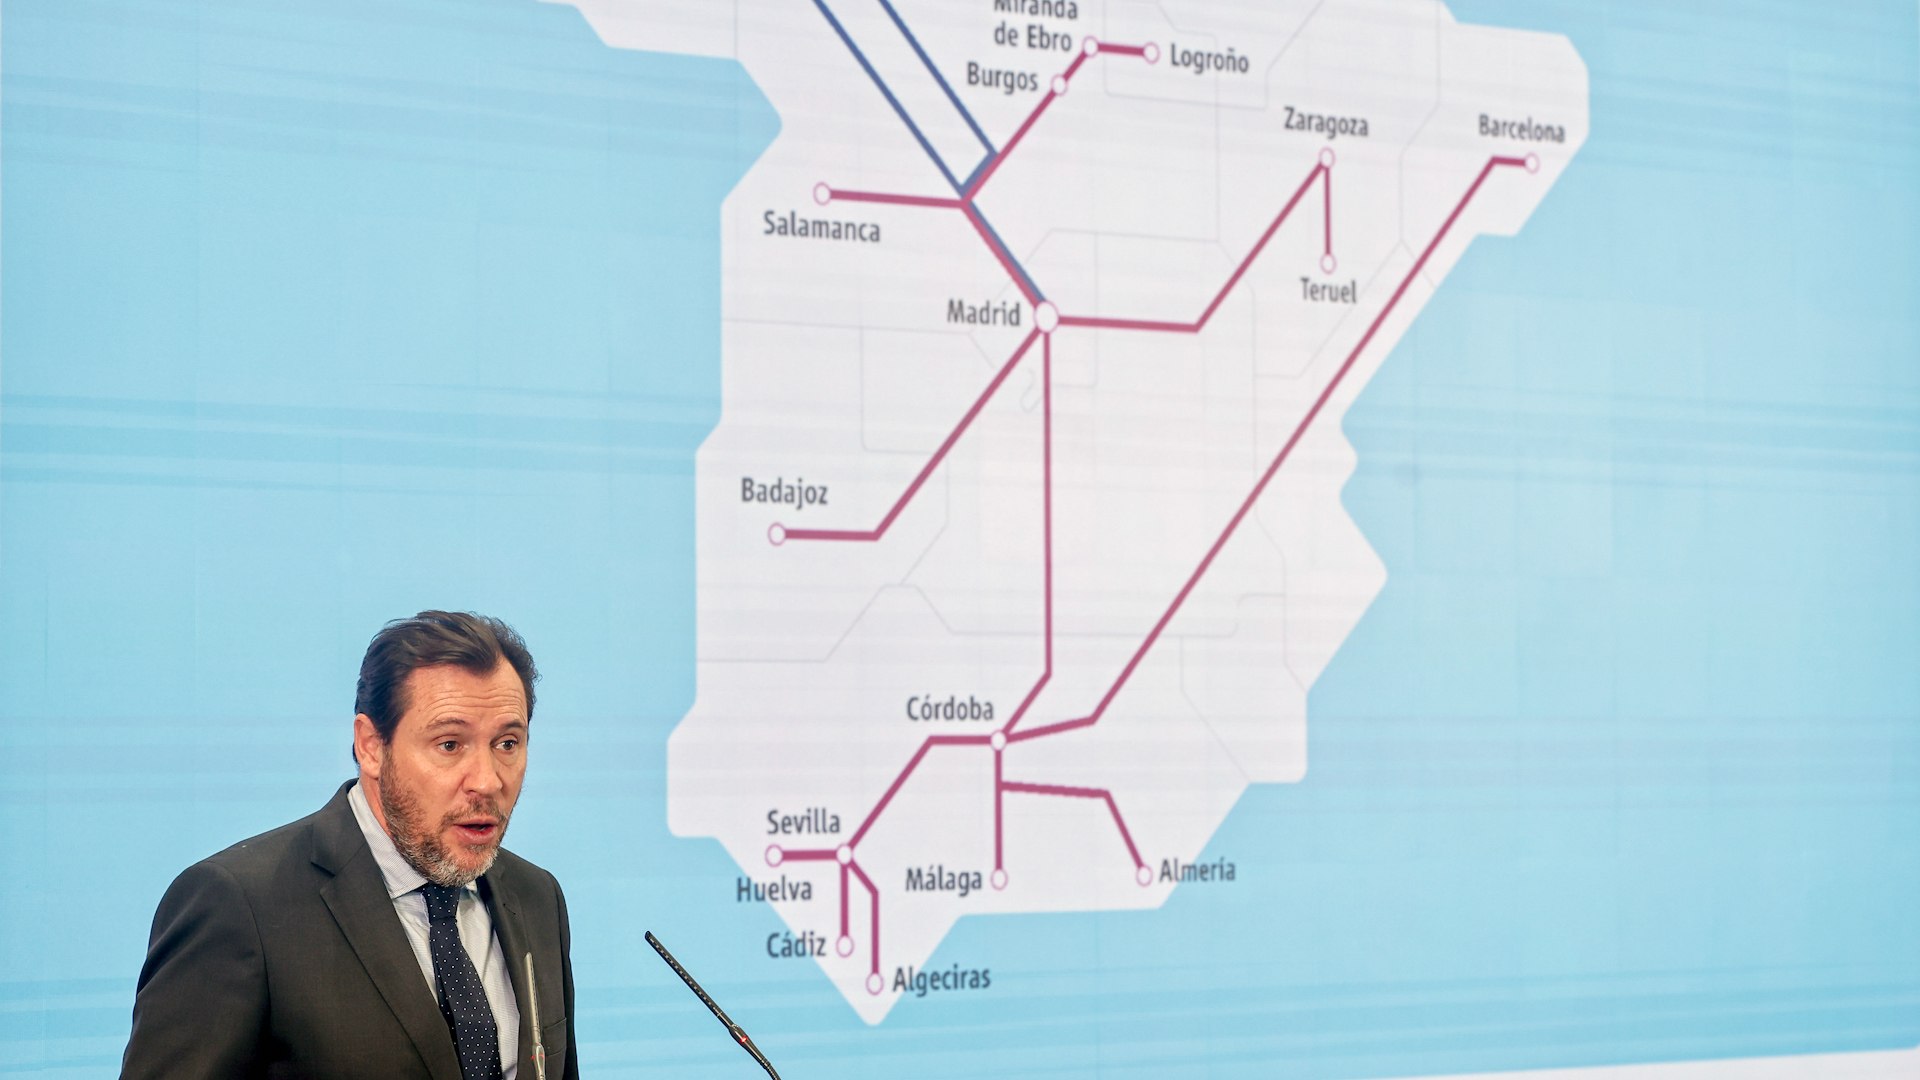 Logroo, Teruel, Salamanca, Badajoz... Puente anuncia mas trenes y servicios para las capitales sin alta velocidad